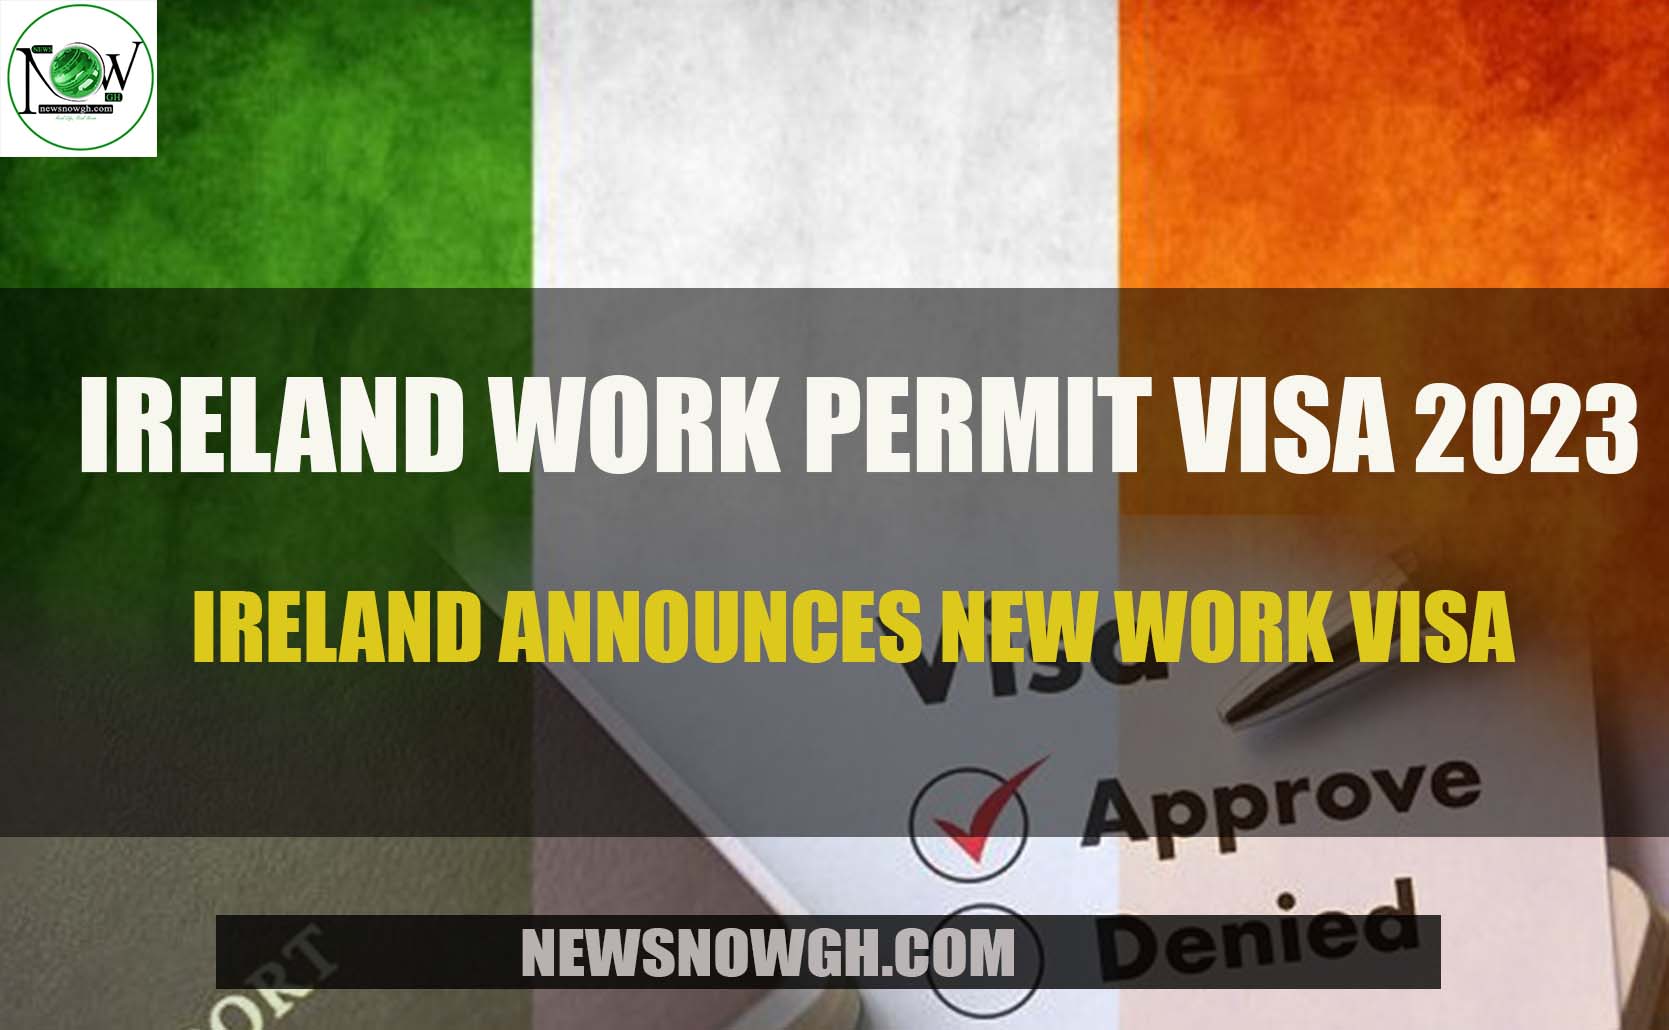 Ireland Work Permit Visa 